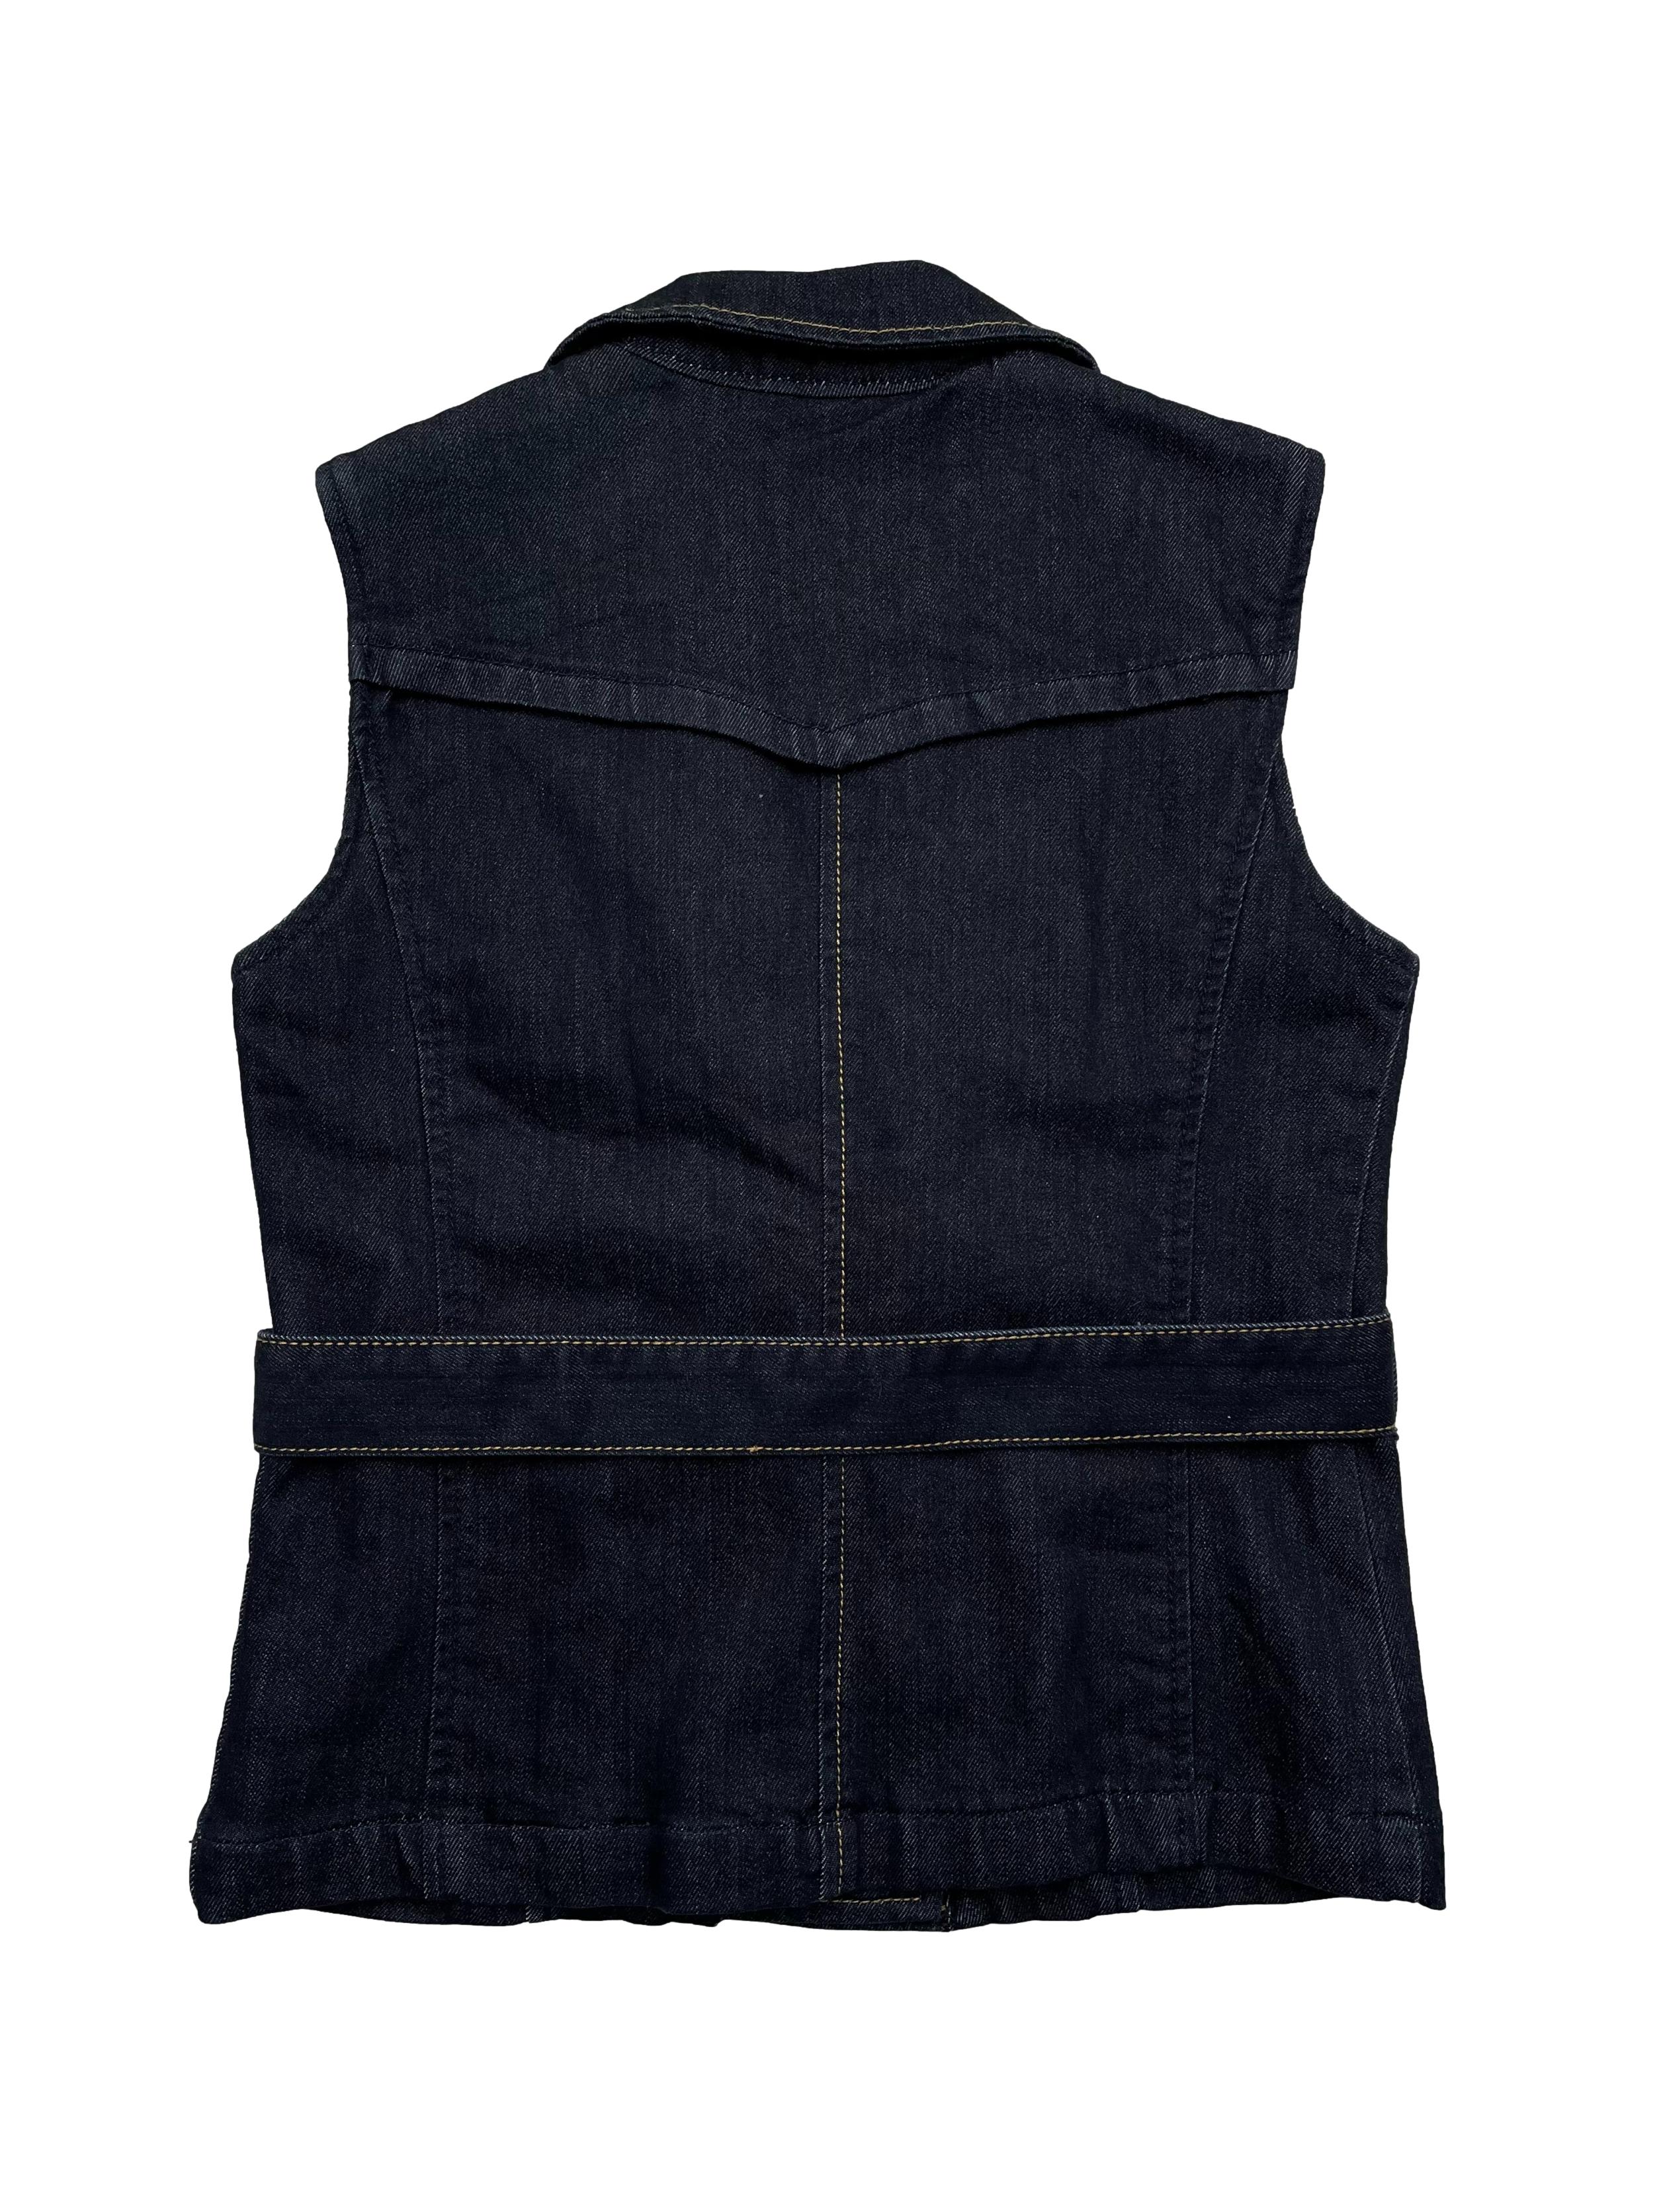 Chaleco de jean azul forrado con dobel fila de botones, bolsillos y cinto para amarrar. Busto 90cm., Largo 53cm